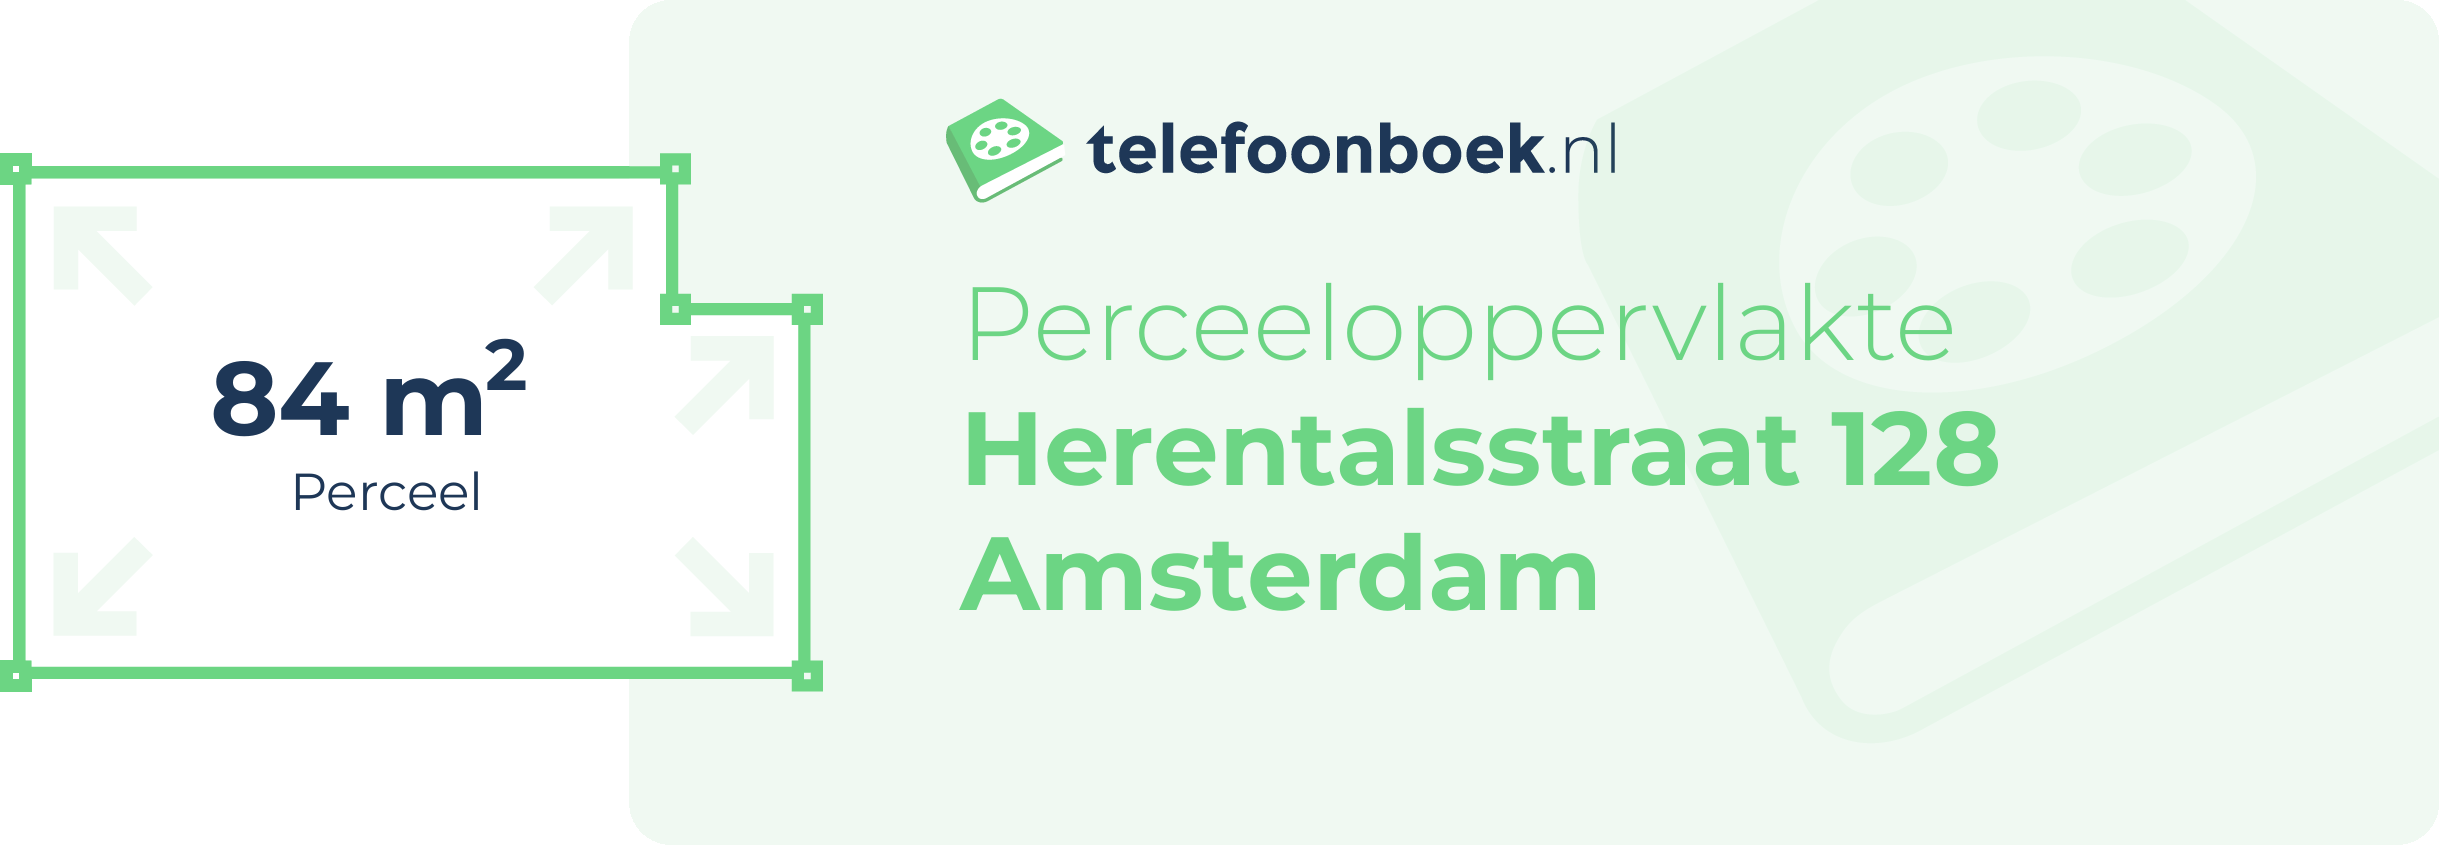 Perceeloppervlakte Herentalsstraat 128 Amsterdam